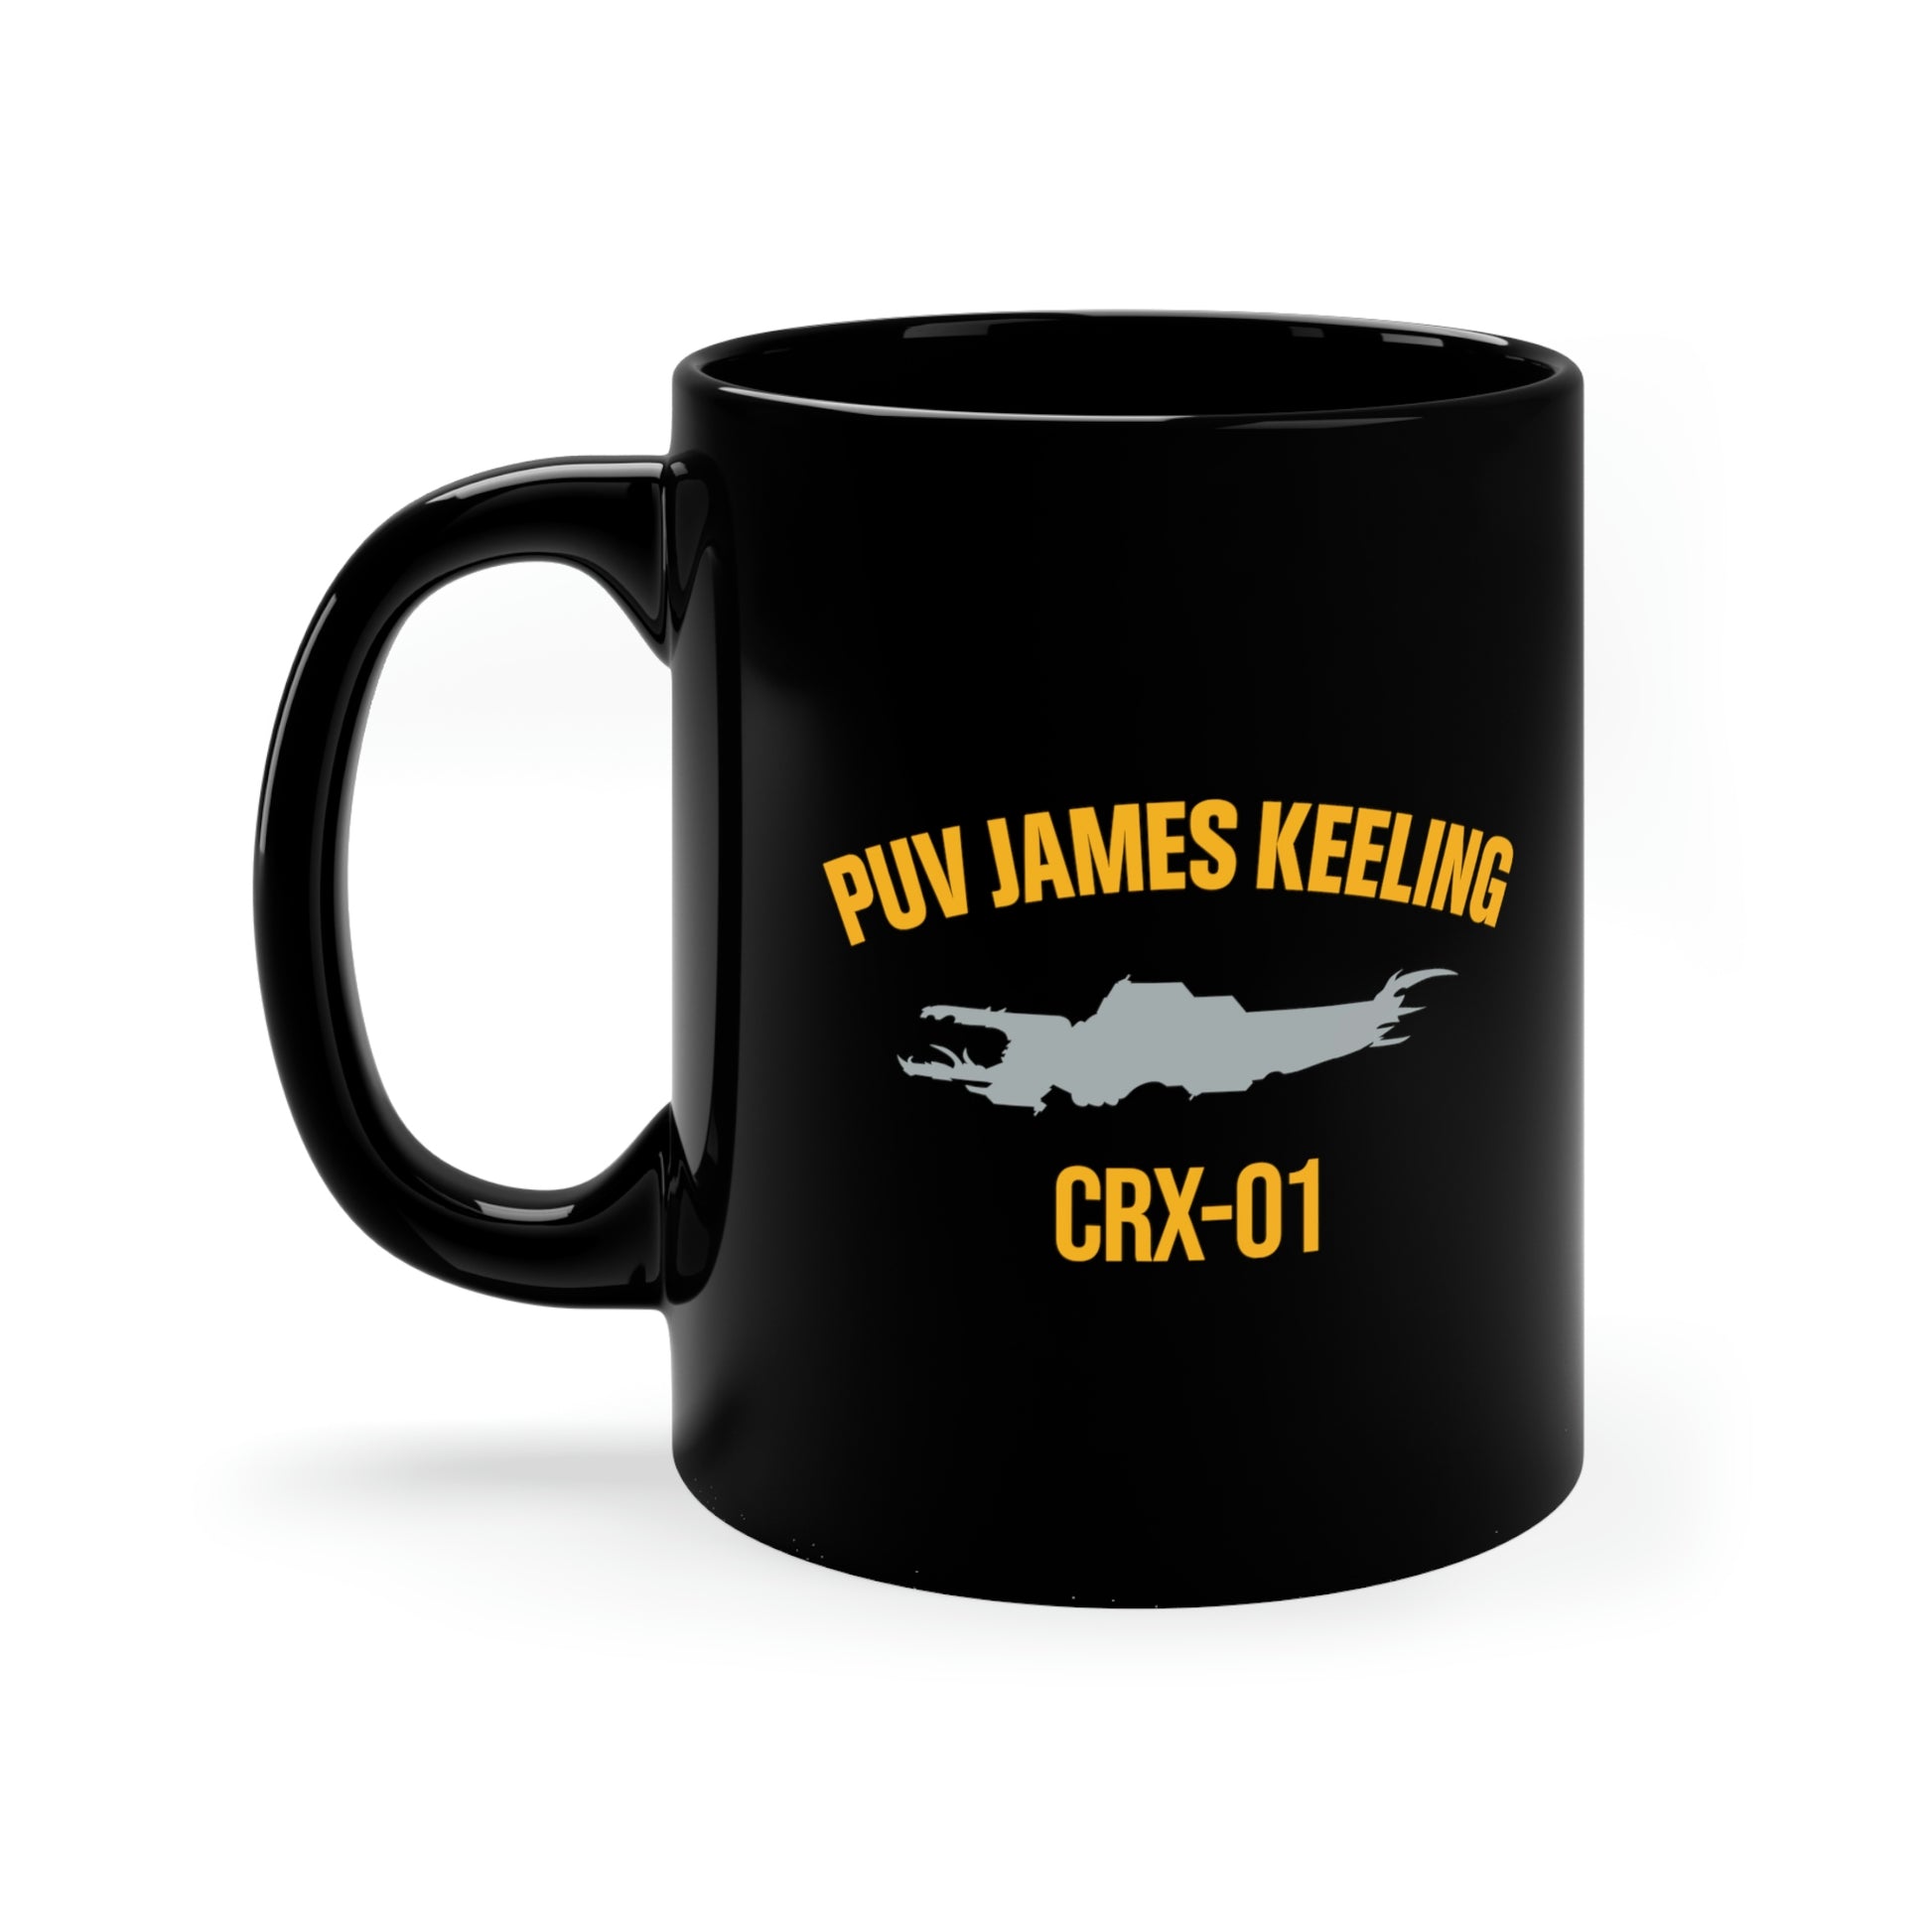 Cobalt Owl Mug - 10 oz. - James Coffee Co